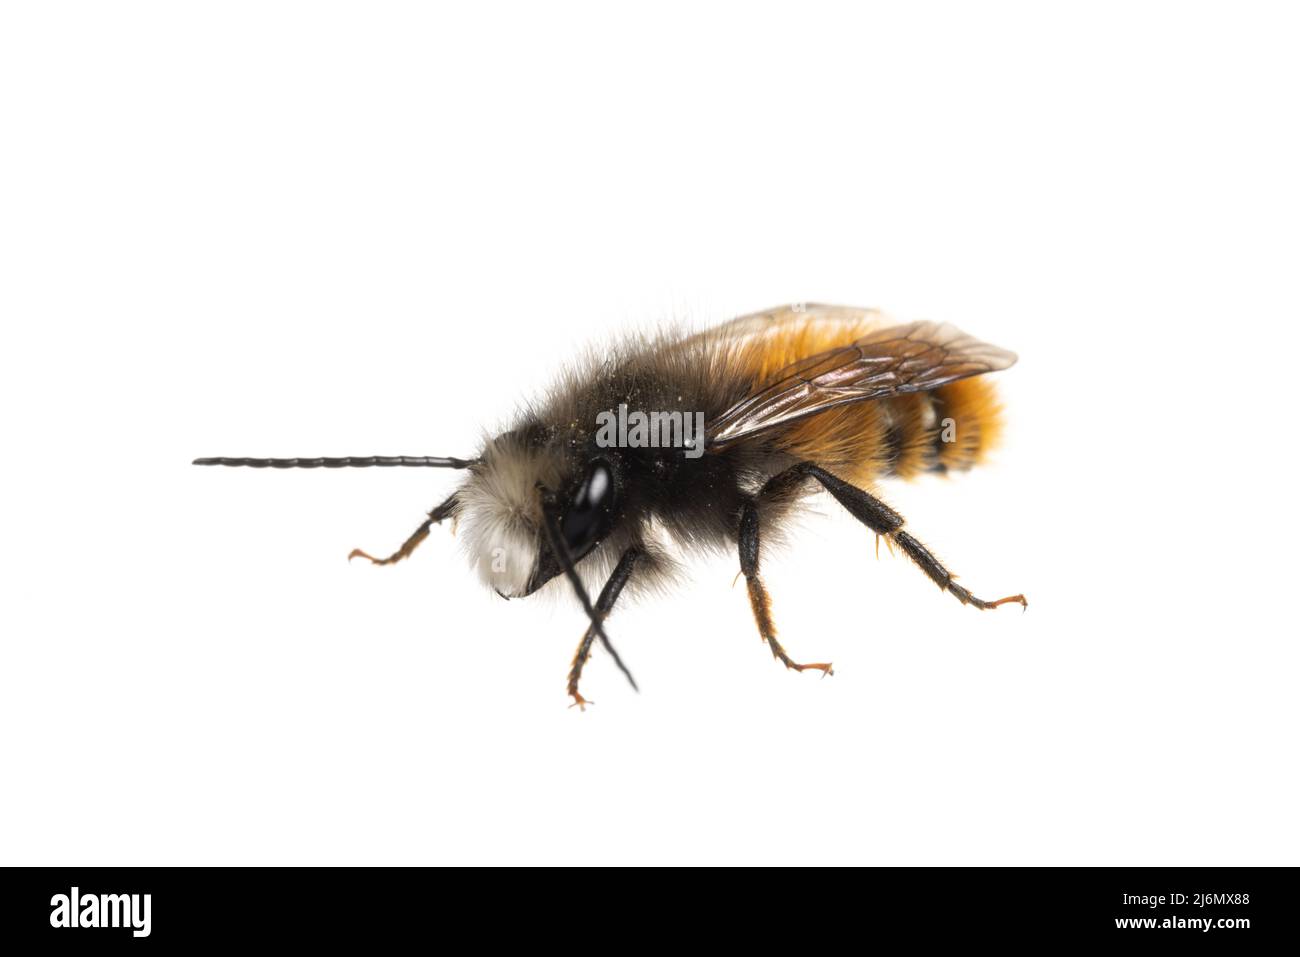 Insects of europe - Bienen: Vorderansicht der männlichen Osmia cornuta Europäische Obstbiene (deutsche Gehoerte Mauerbiene) isoliert auf weißem Hintergrund Stockfoto